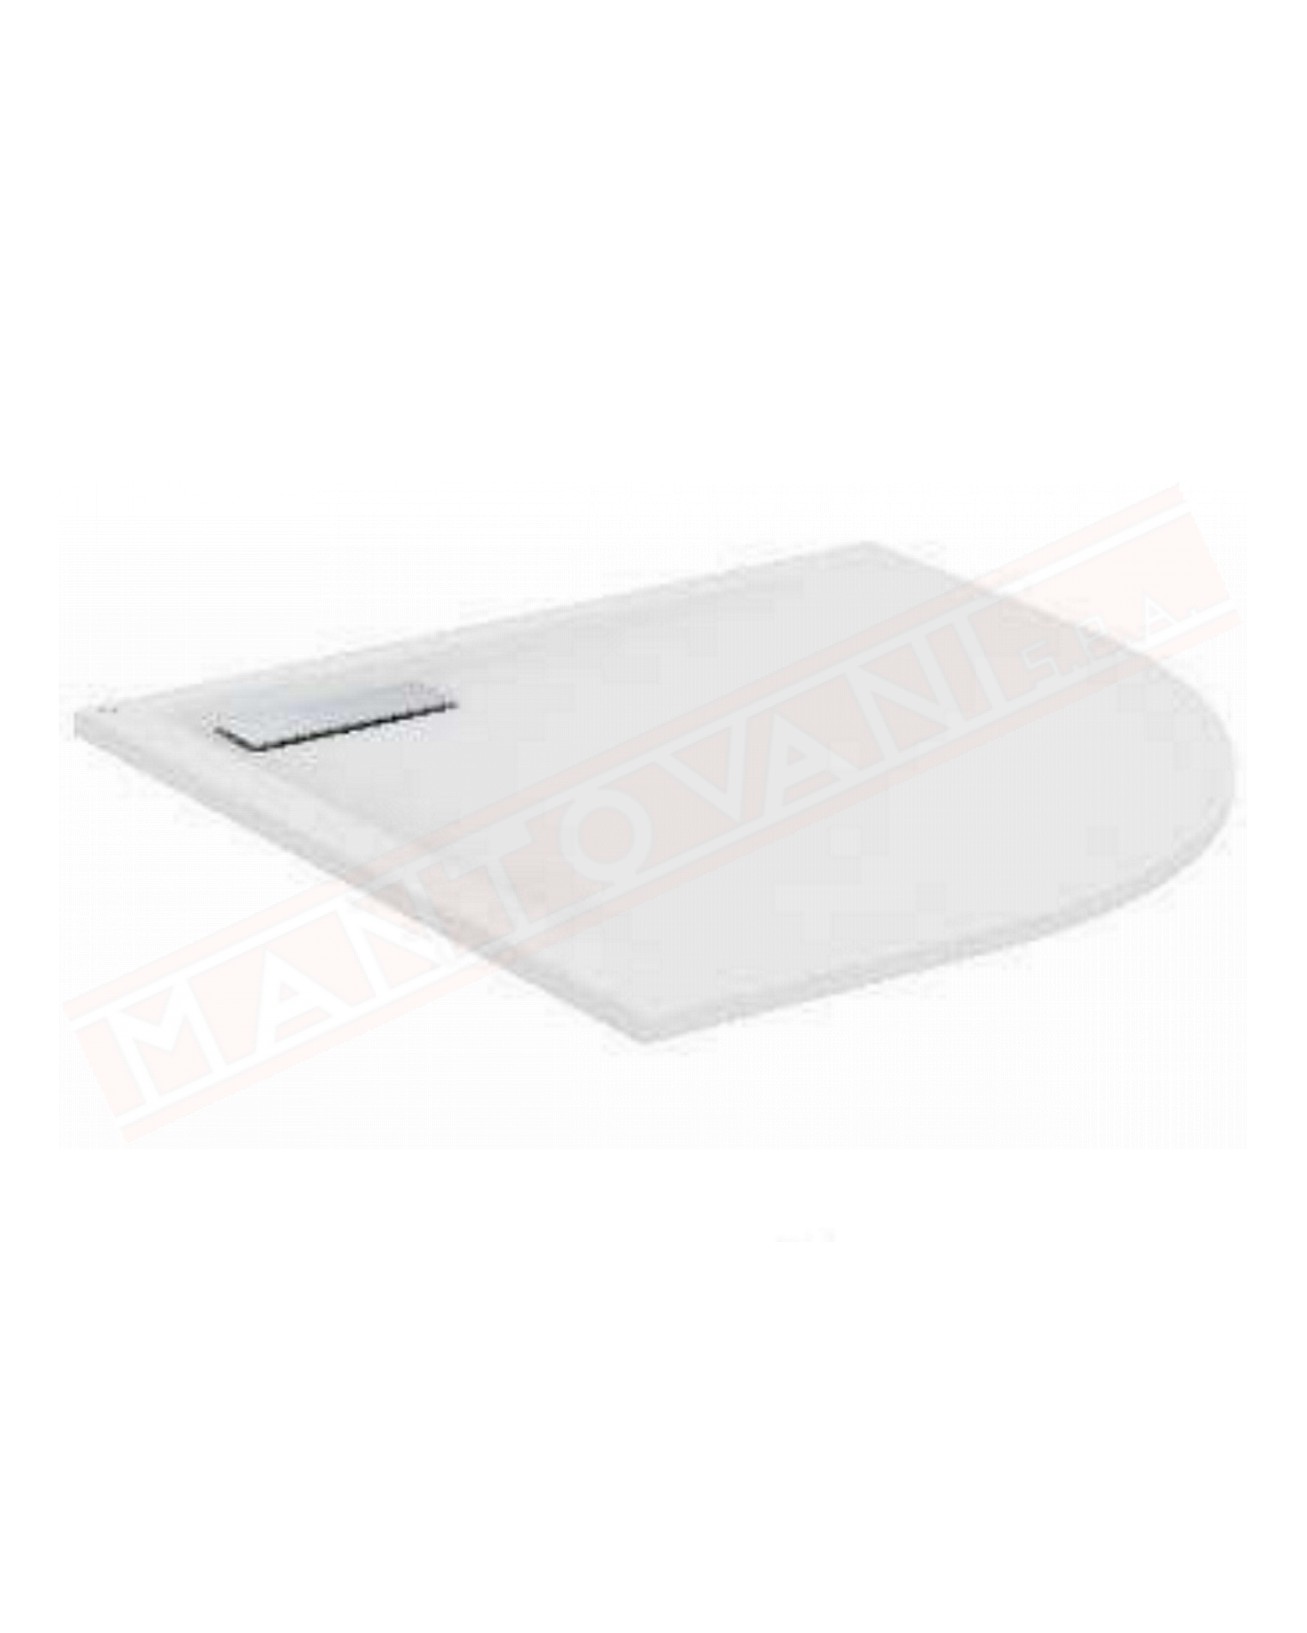 Ideal Standard ultraflat new bianco opaco 90x90x2.5 tondo piatto doccia ultrasottile in acrilico in pasta senza piletta t4493aa